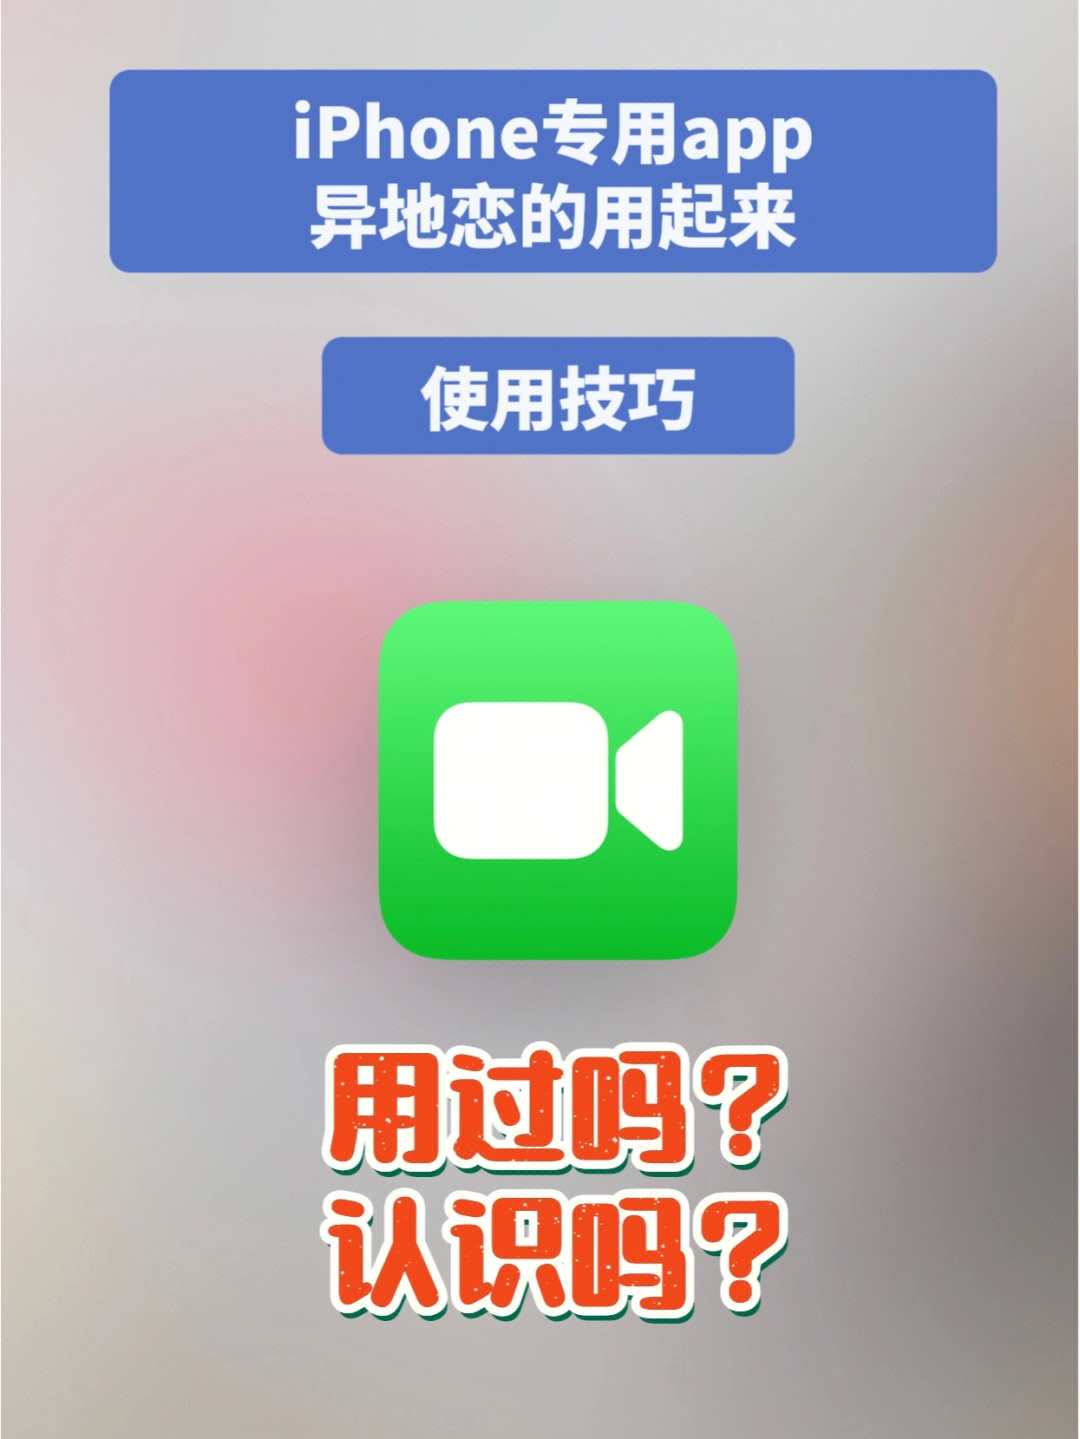 “全新沟通体验！最新版WhatsApp中文，智能翻译功能震撼